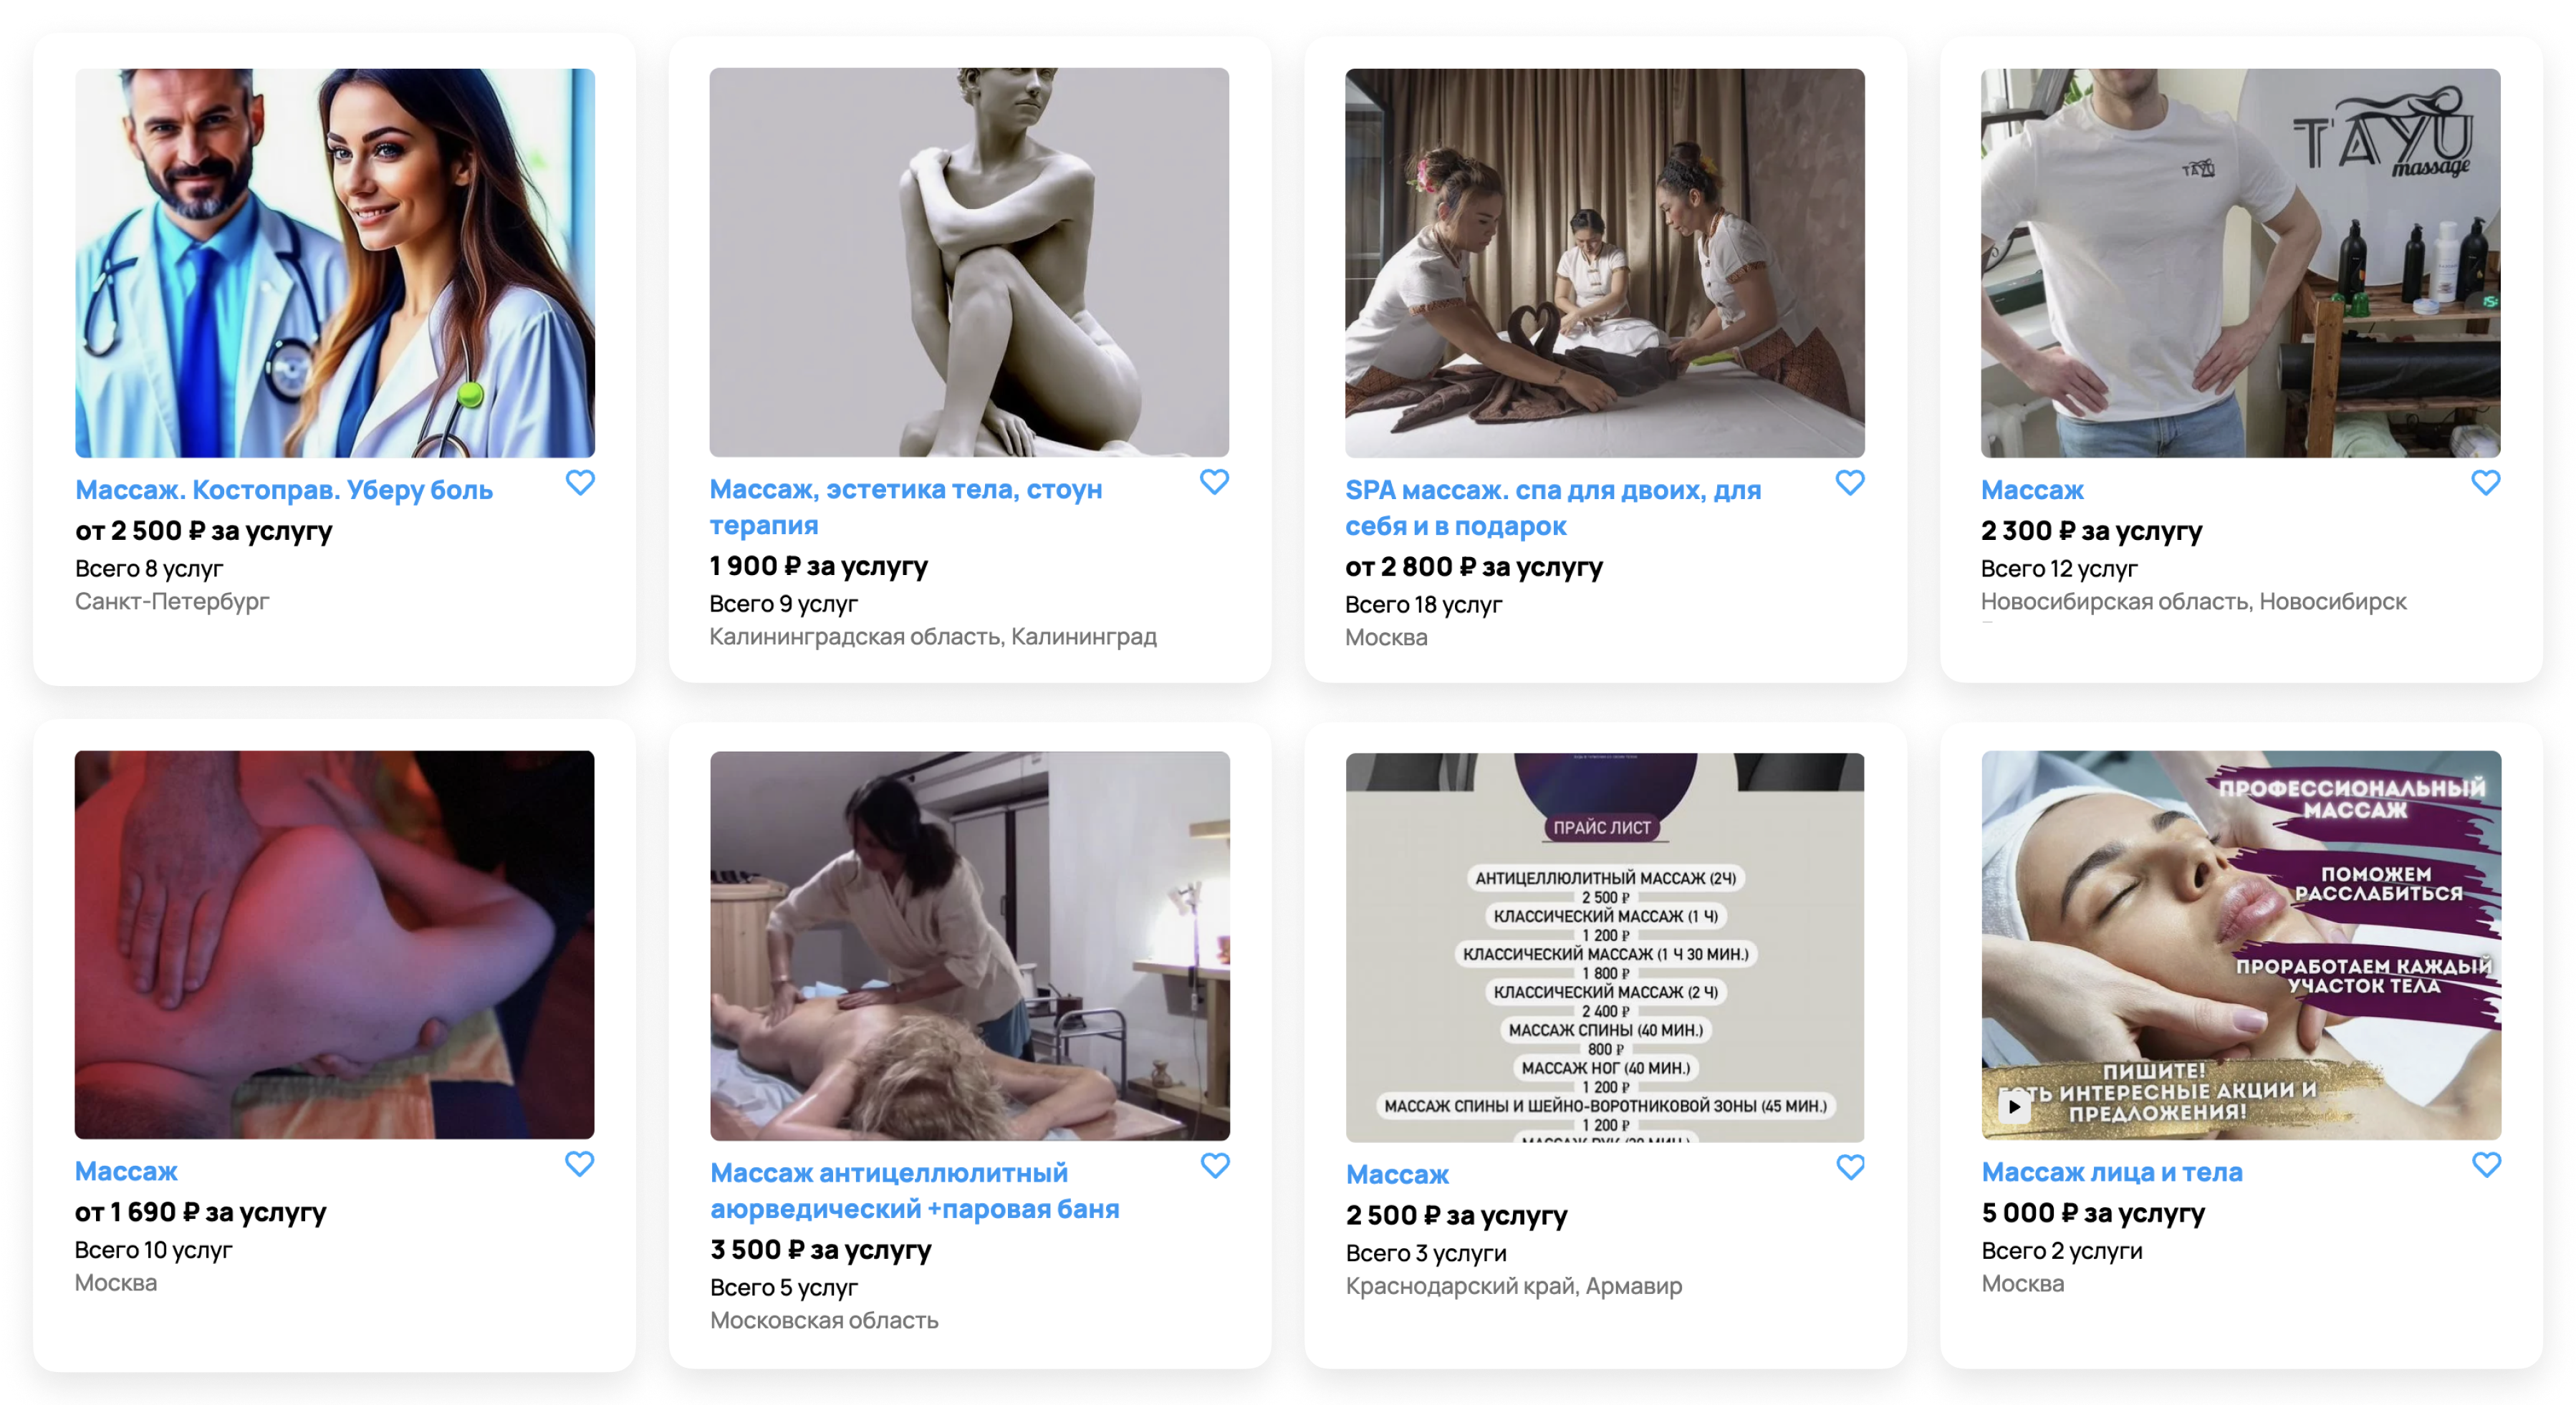 Скриншоты объявлений восьми массажных салонов с неудачной заглавной фотографией